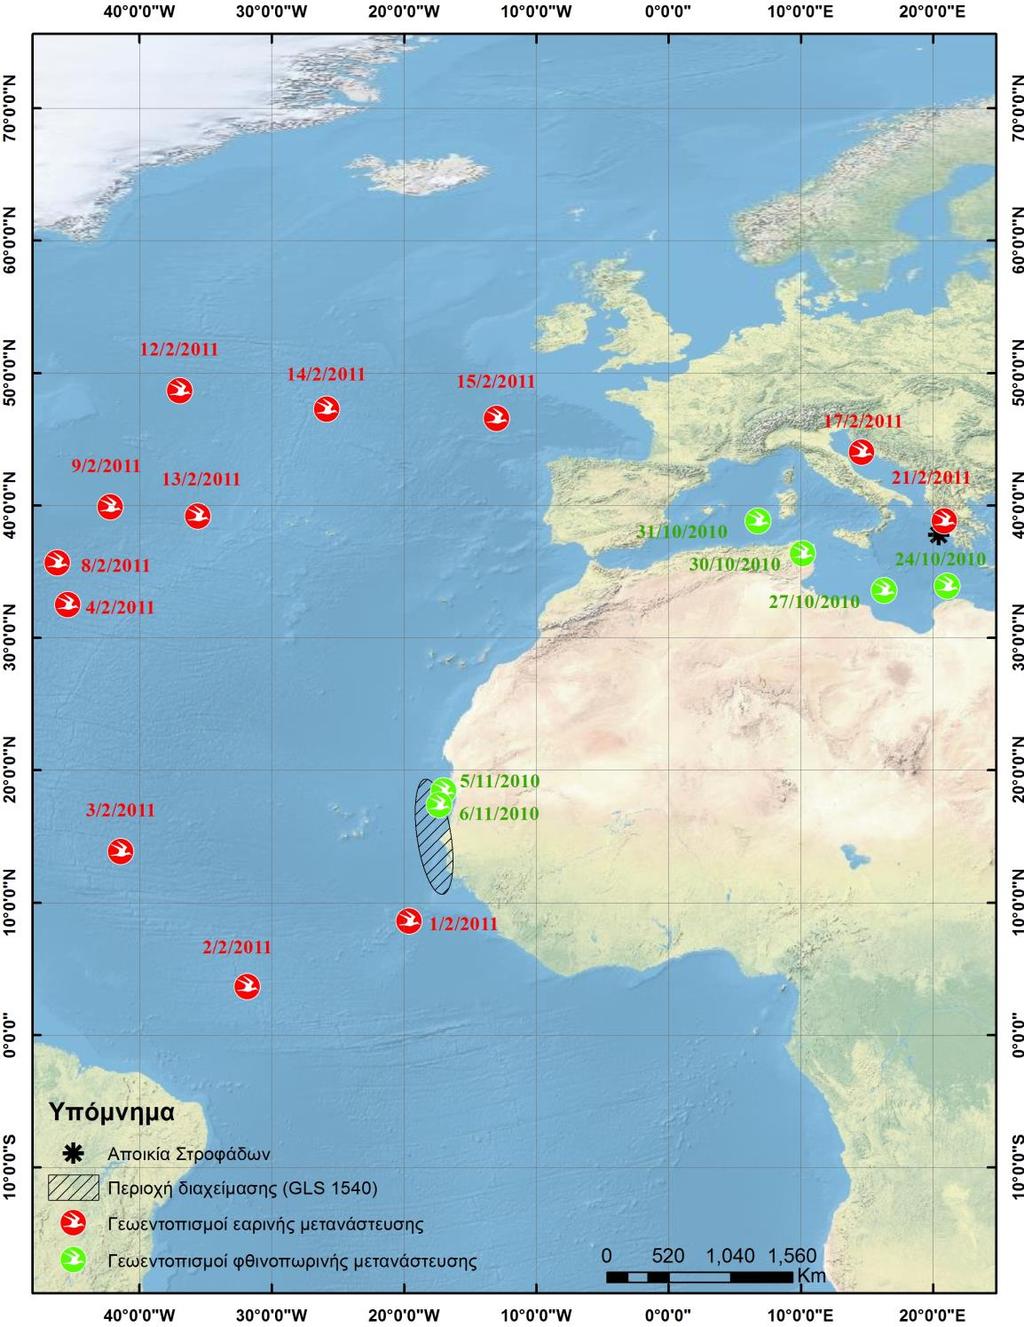 Διάρκεια καταγραφών: 283 μέρες (12/7/10-20/4/11) Χρονικό βήμα καταγραφών: 10min Αριθμός καταγεγραμμένων σημείων (Geolocations): 40.